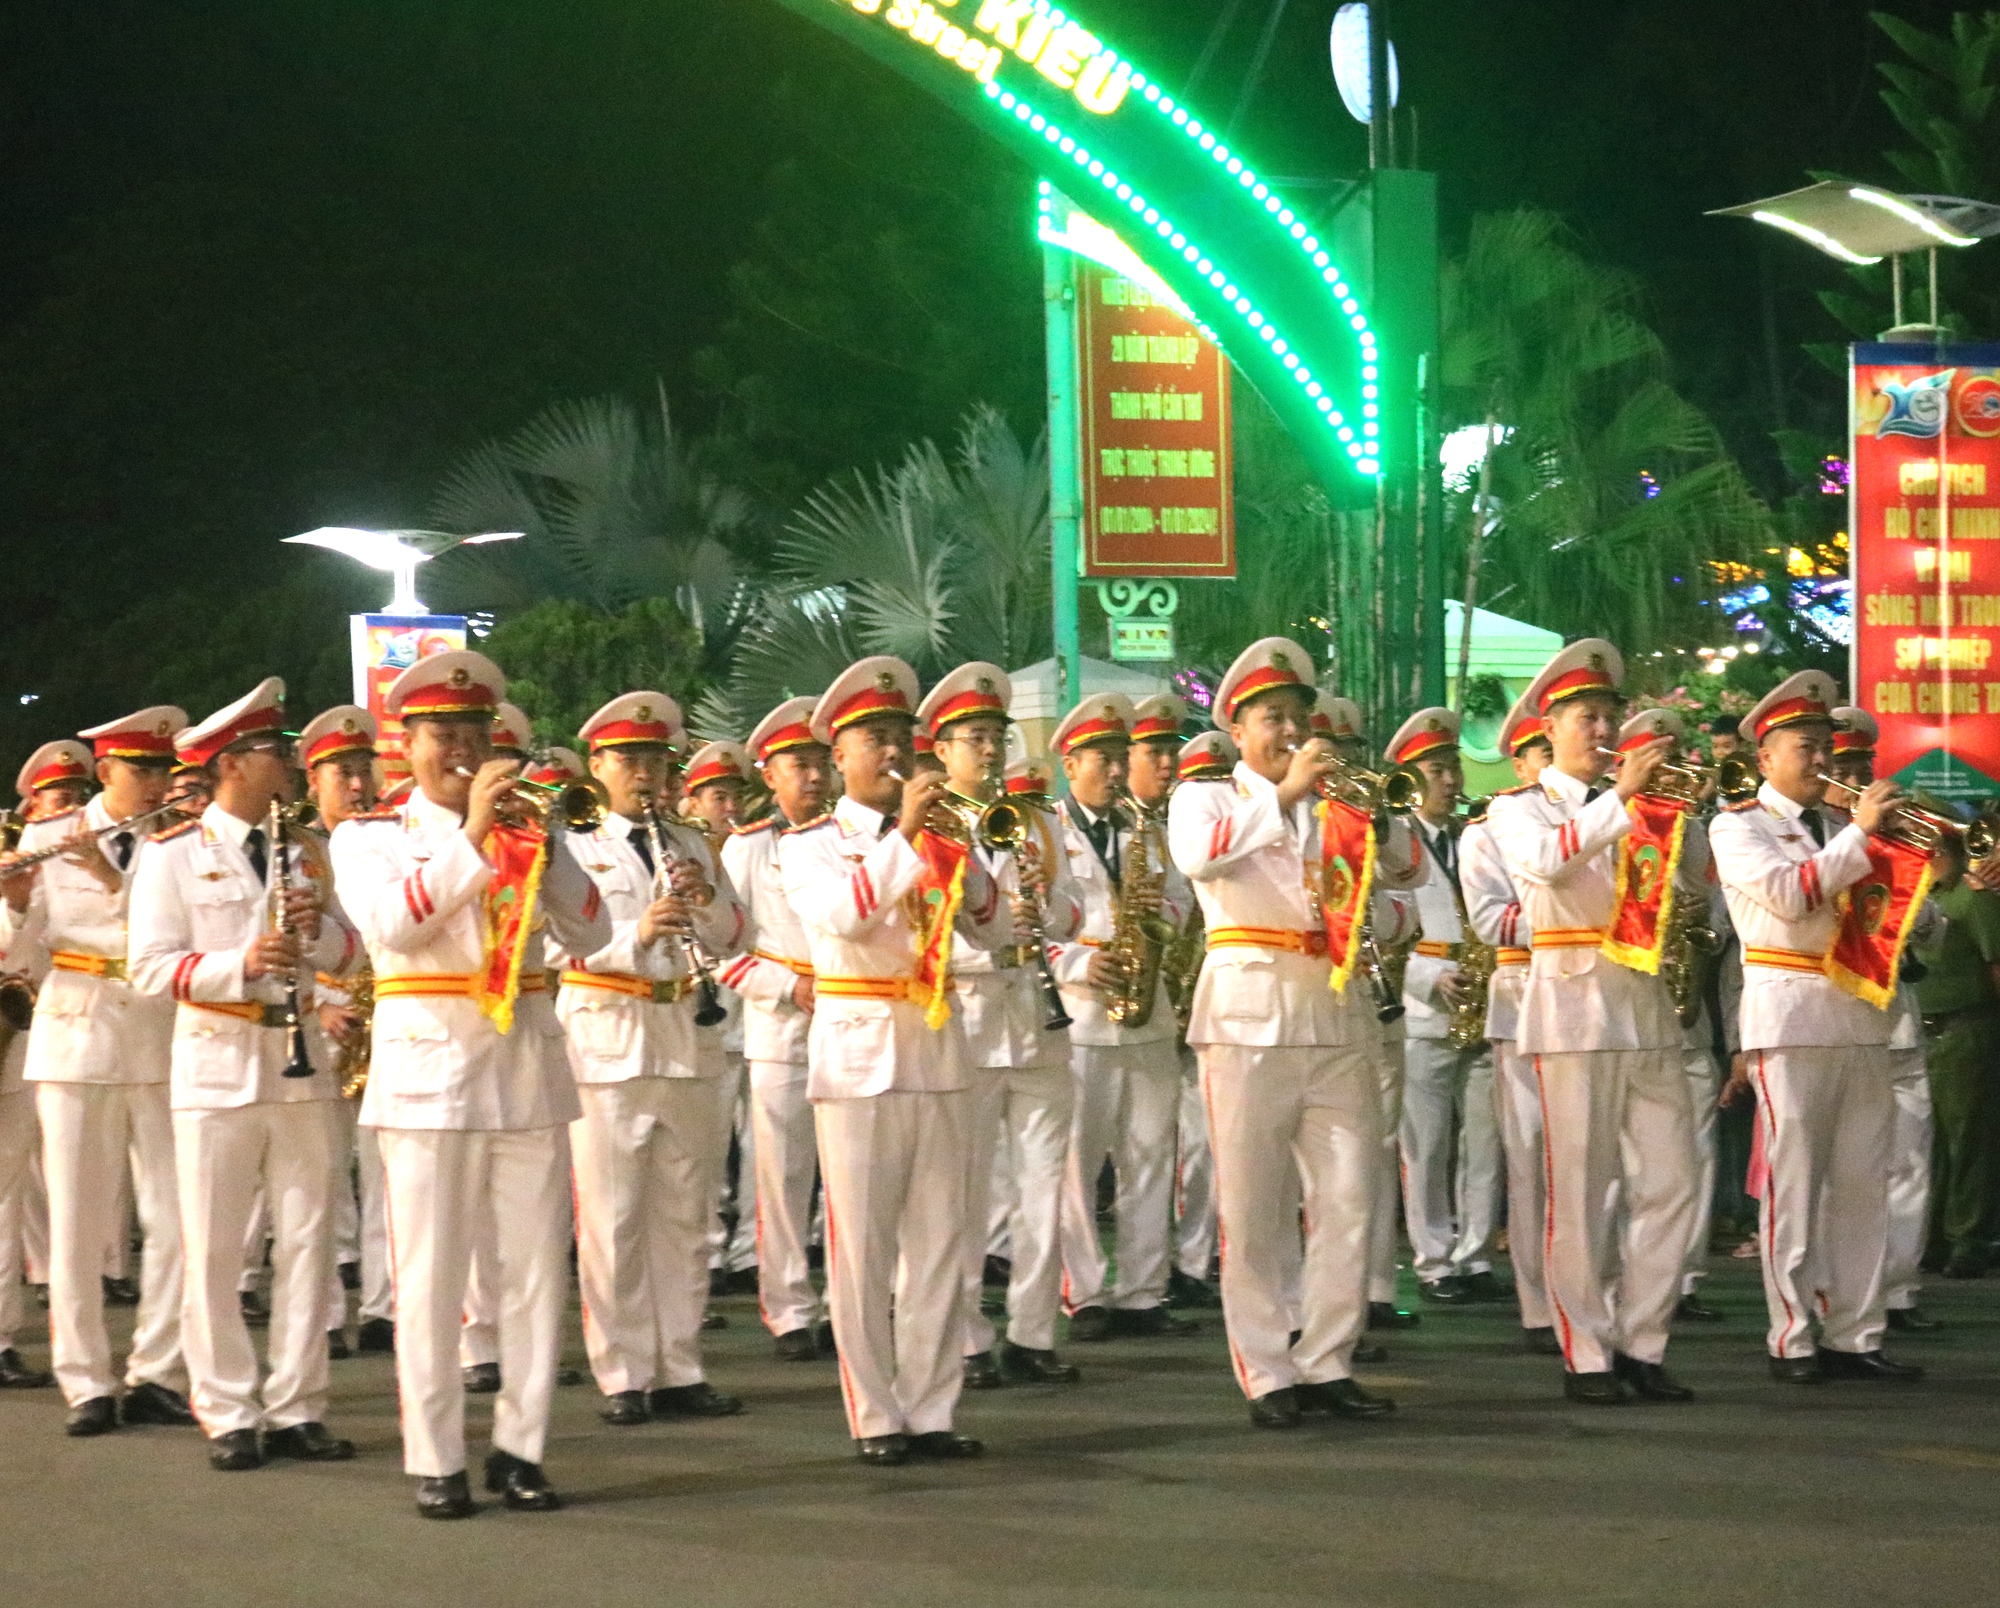 CLIP: Đoàn nghi lễ Công an nhân dân biểu diễn tại bến Ninh Kiều - Ảnh 5.